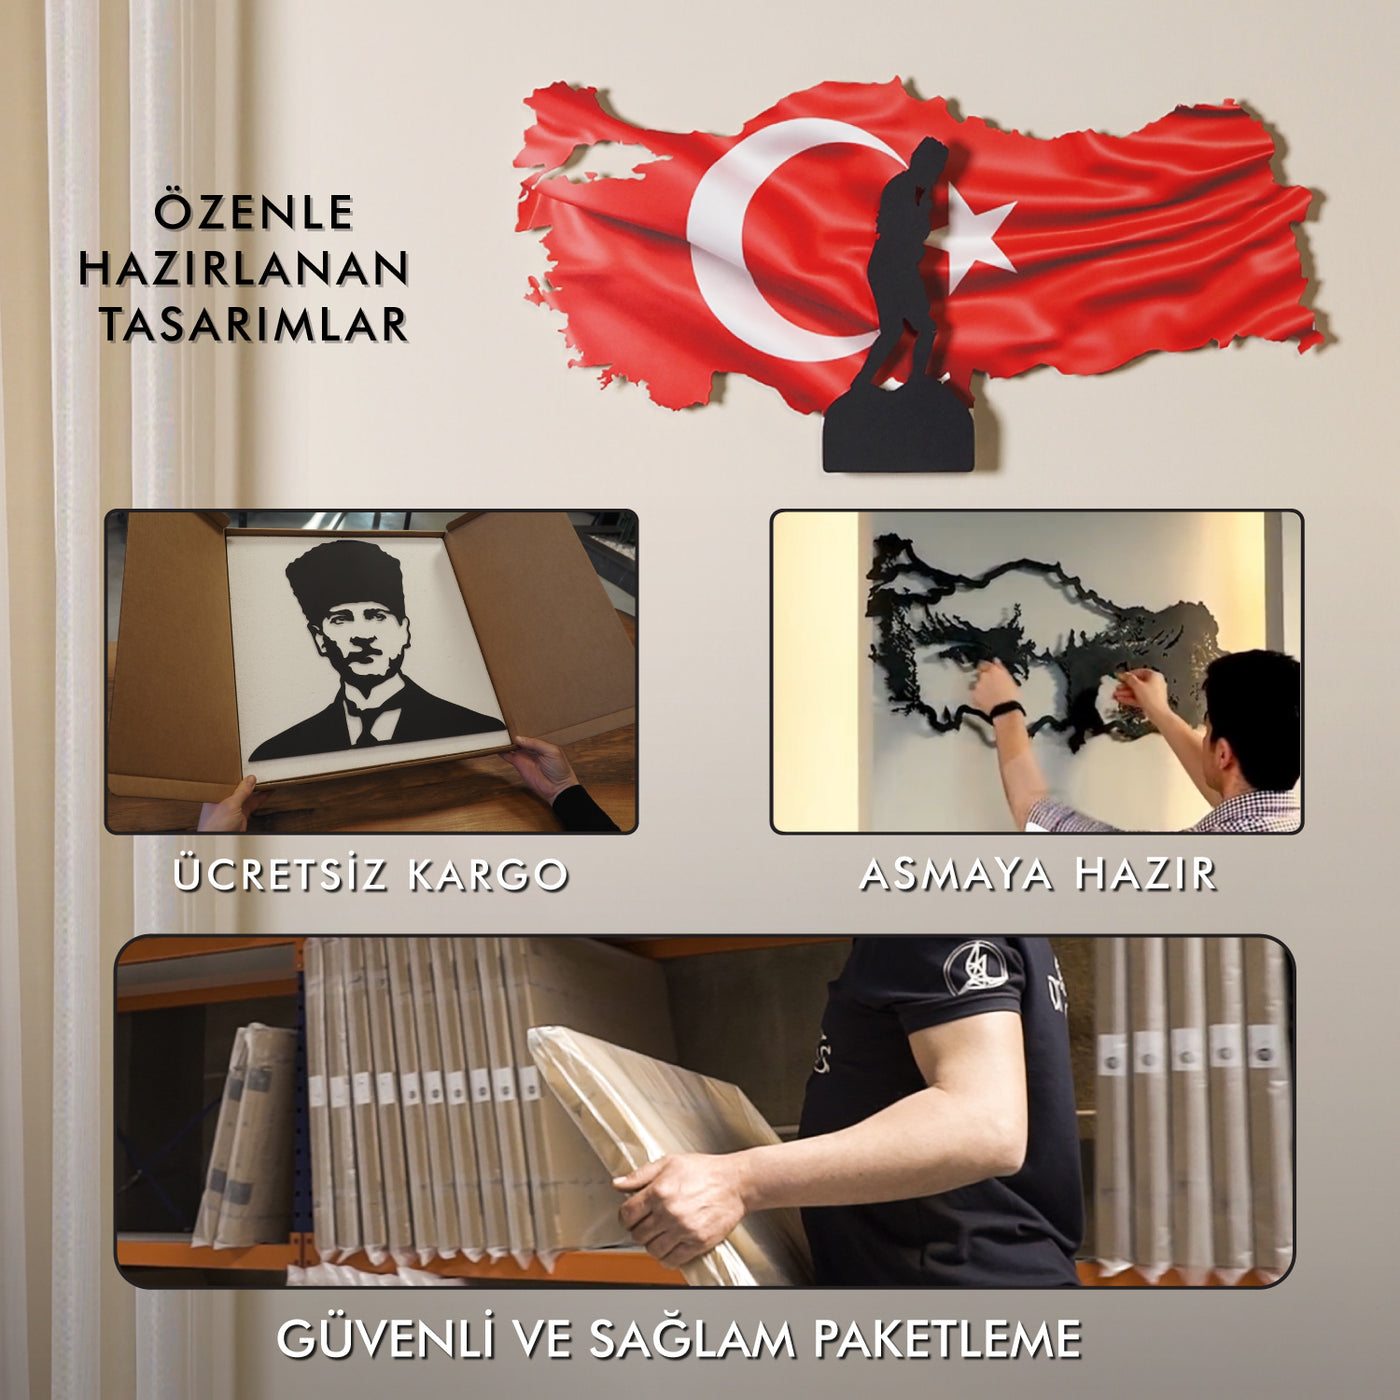 3 Boyutlu Renkli Atatürk ve Türkiye Haritası Metal Duvar Tablosu - APT763